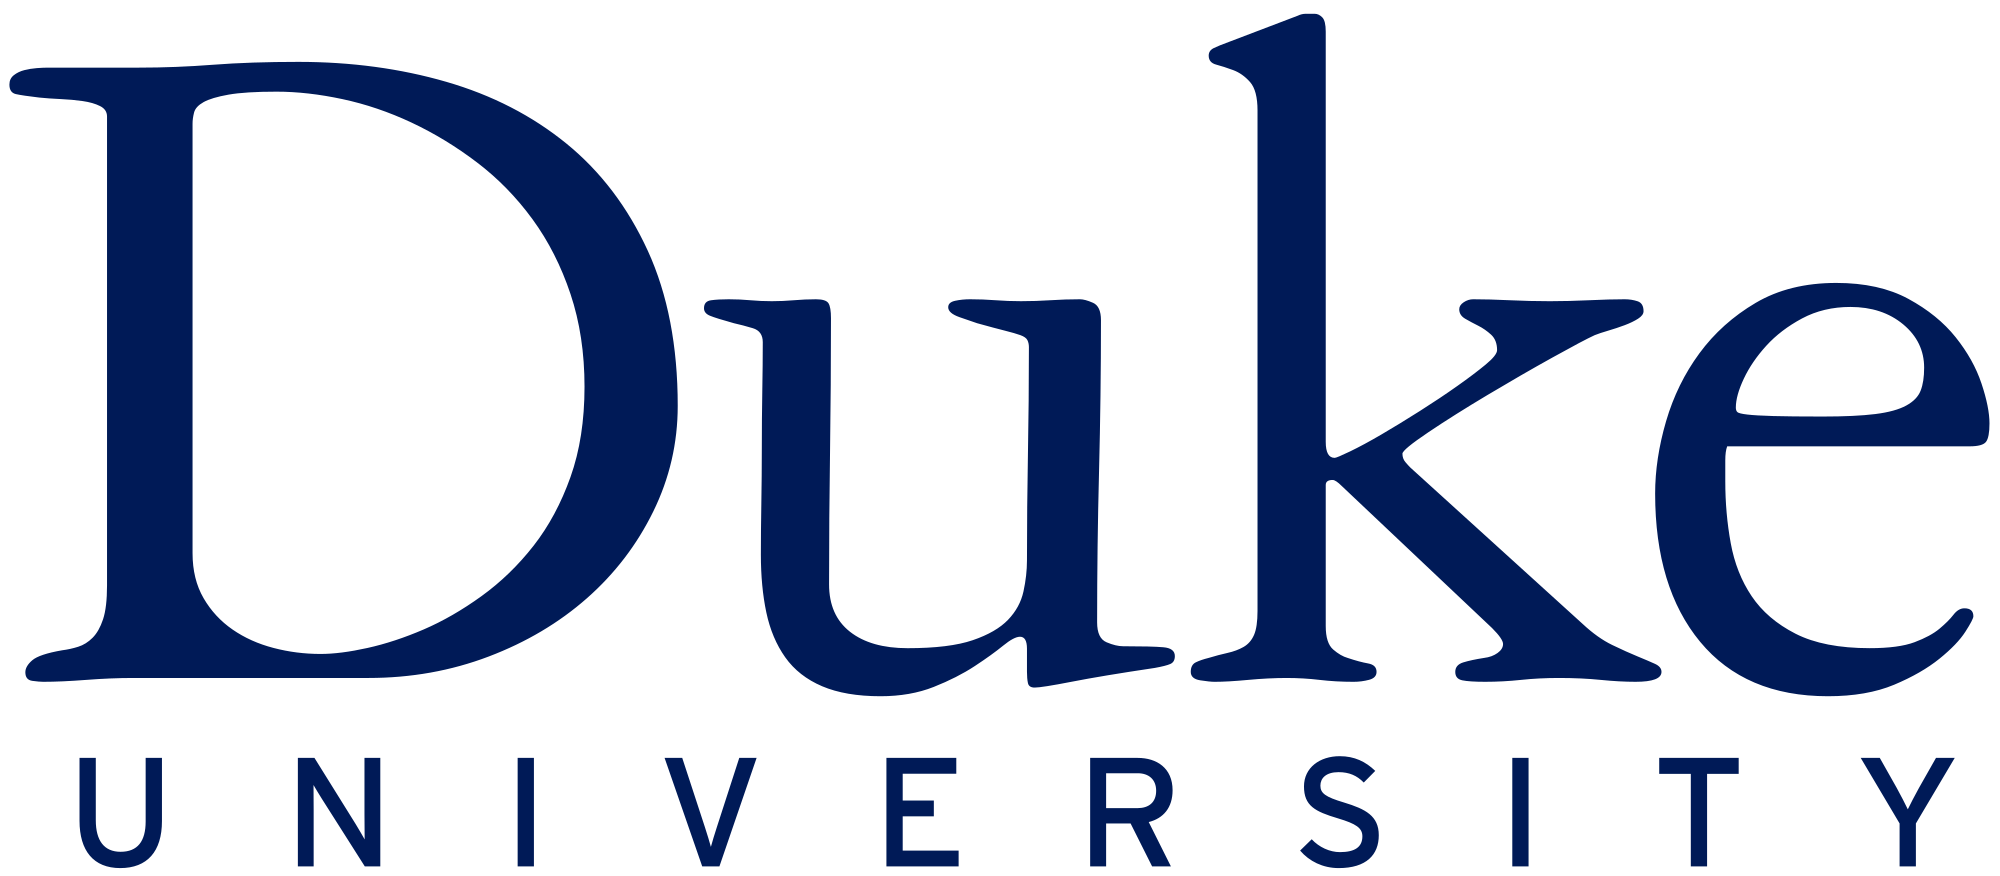 Duke Logo - File:Duke University logo.svg - Wikimedia Commons